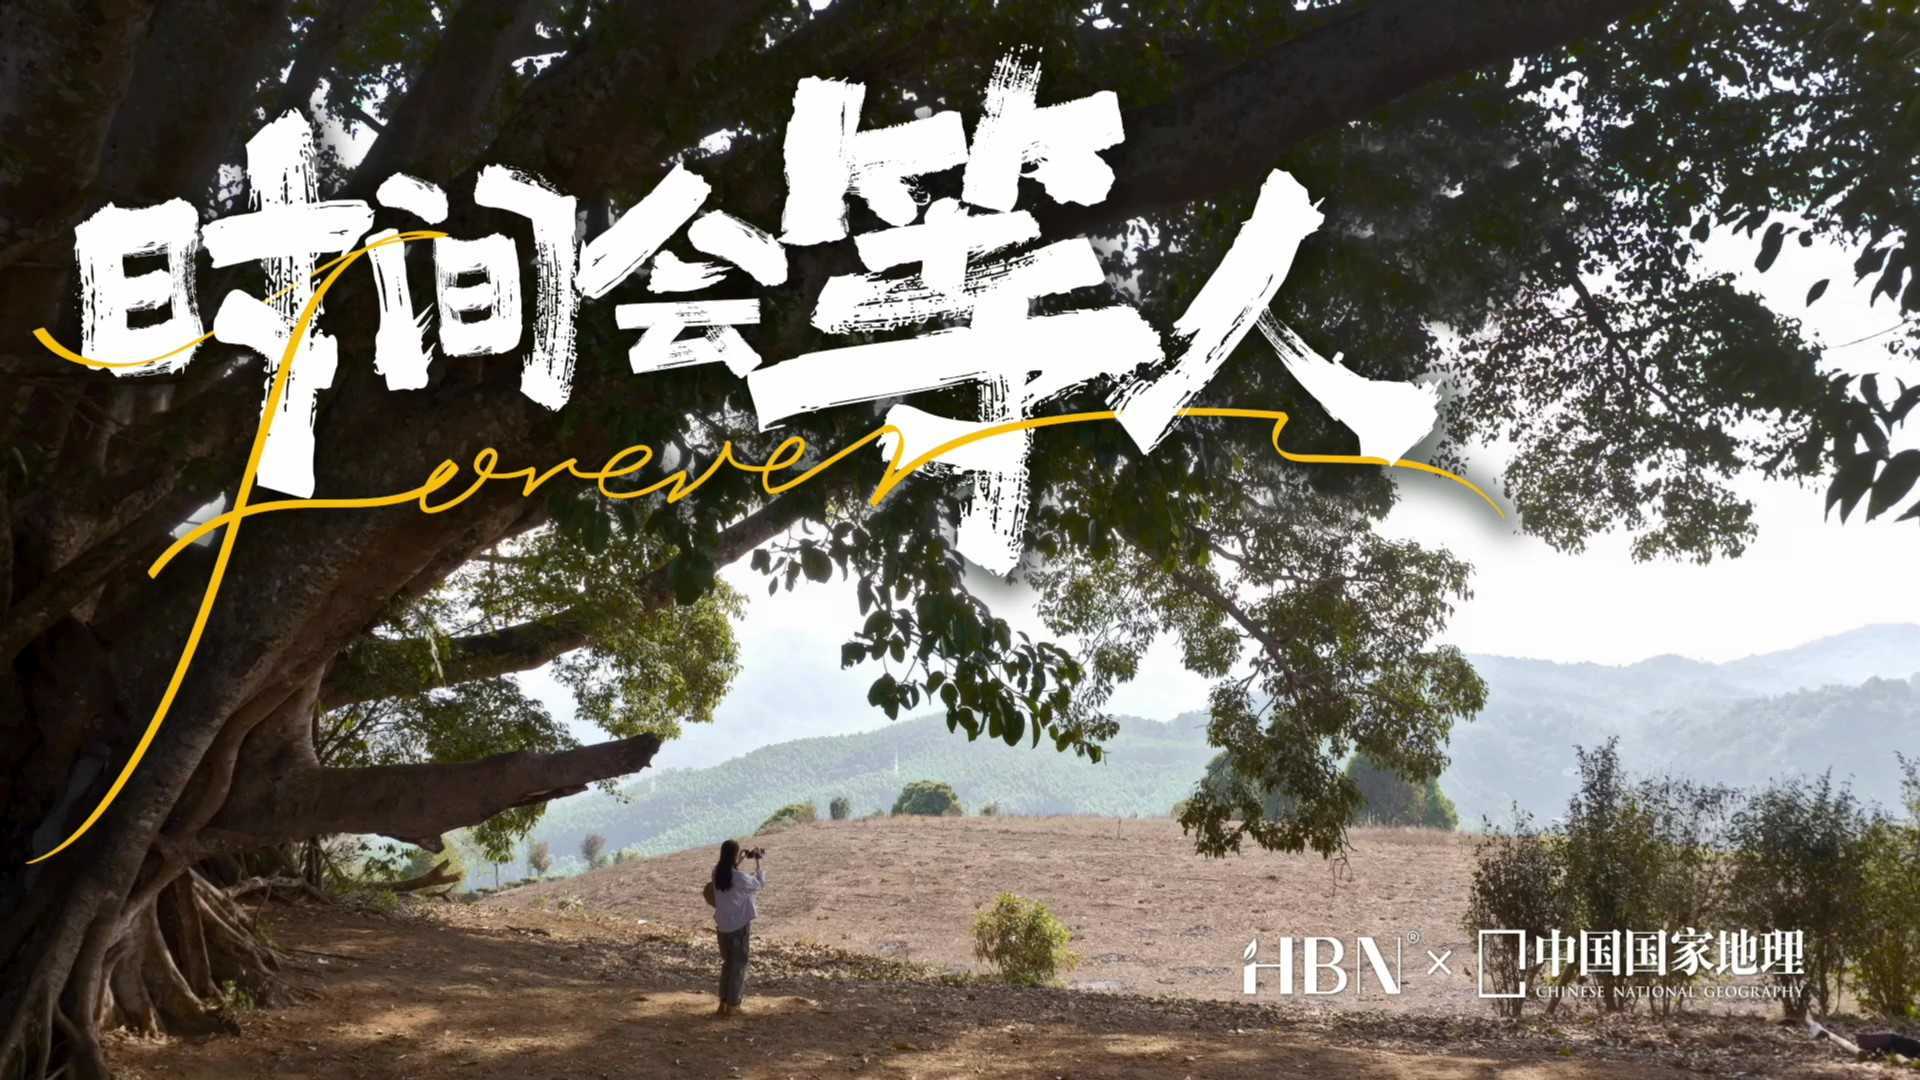 HBN & 中国国家地理 人文纪录片 | 《时间会等人》